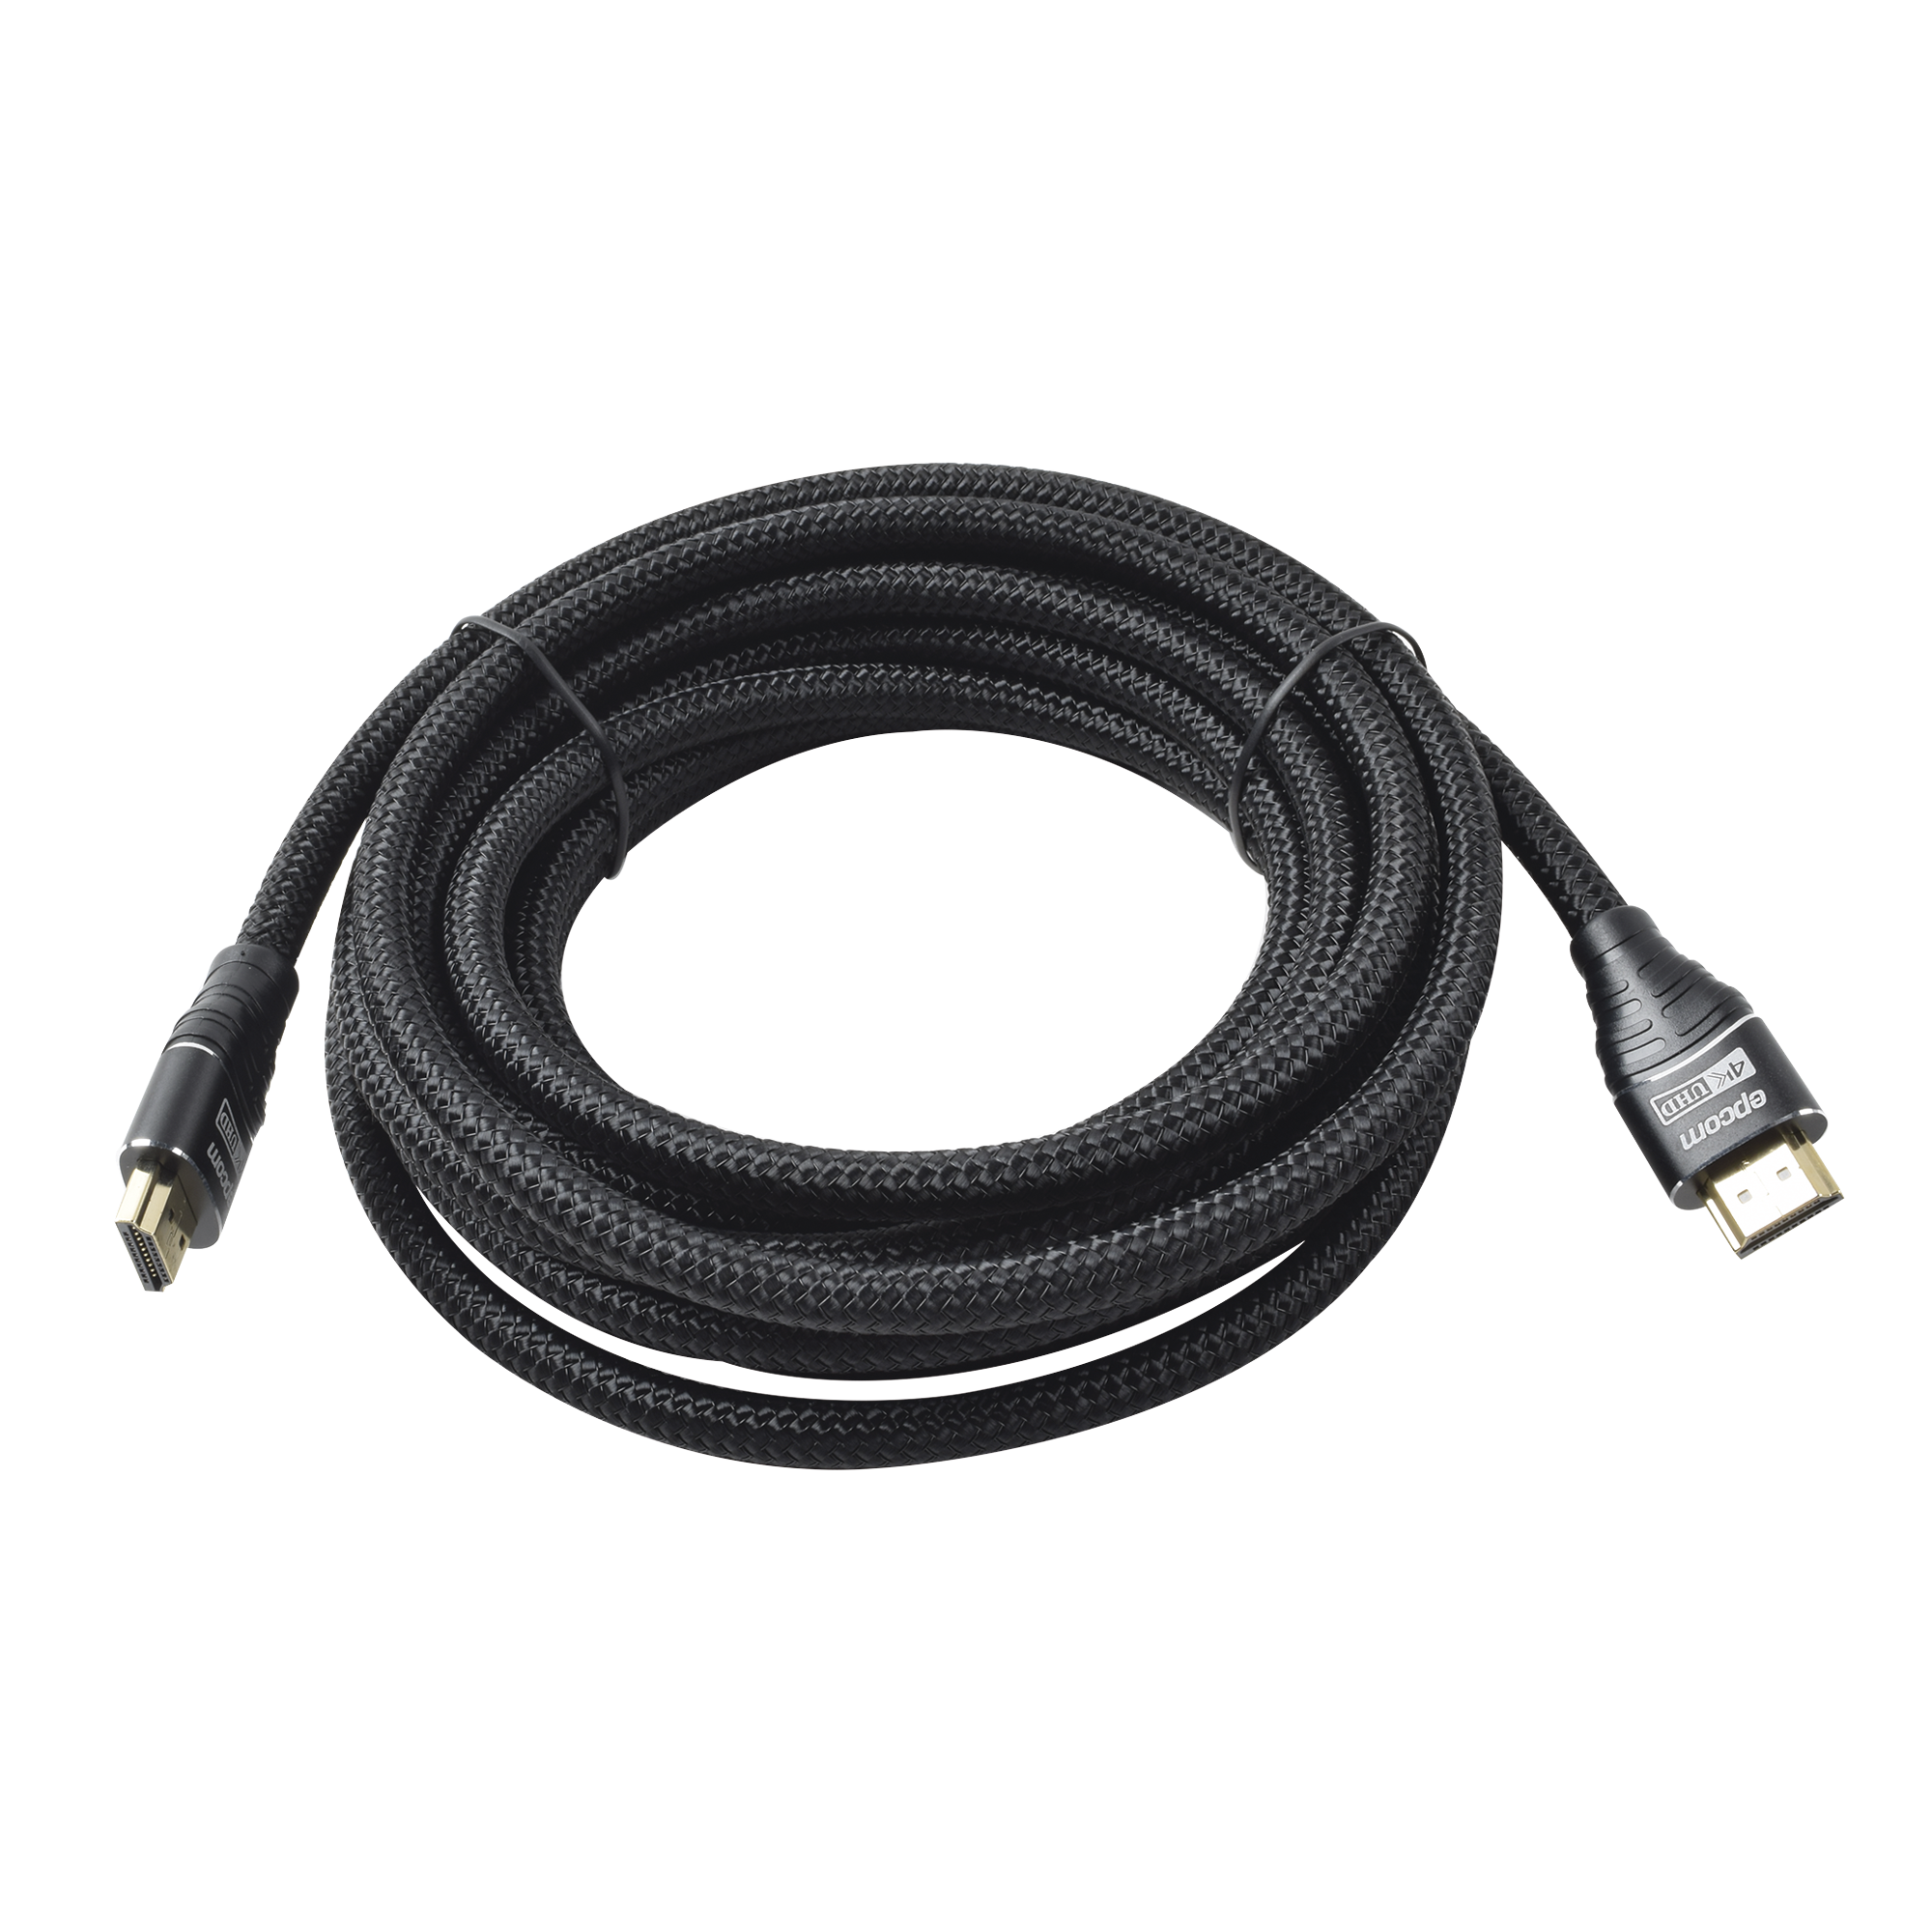 Cable HDMI Ultra-Resistente Redondo de 5m (16.4 ft) Optimizado para Resolución 4K ULTRA HD